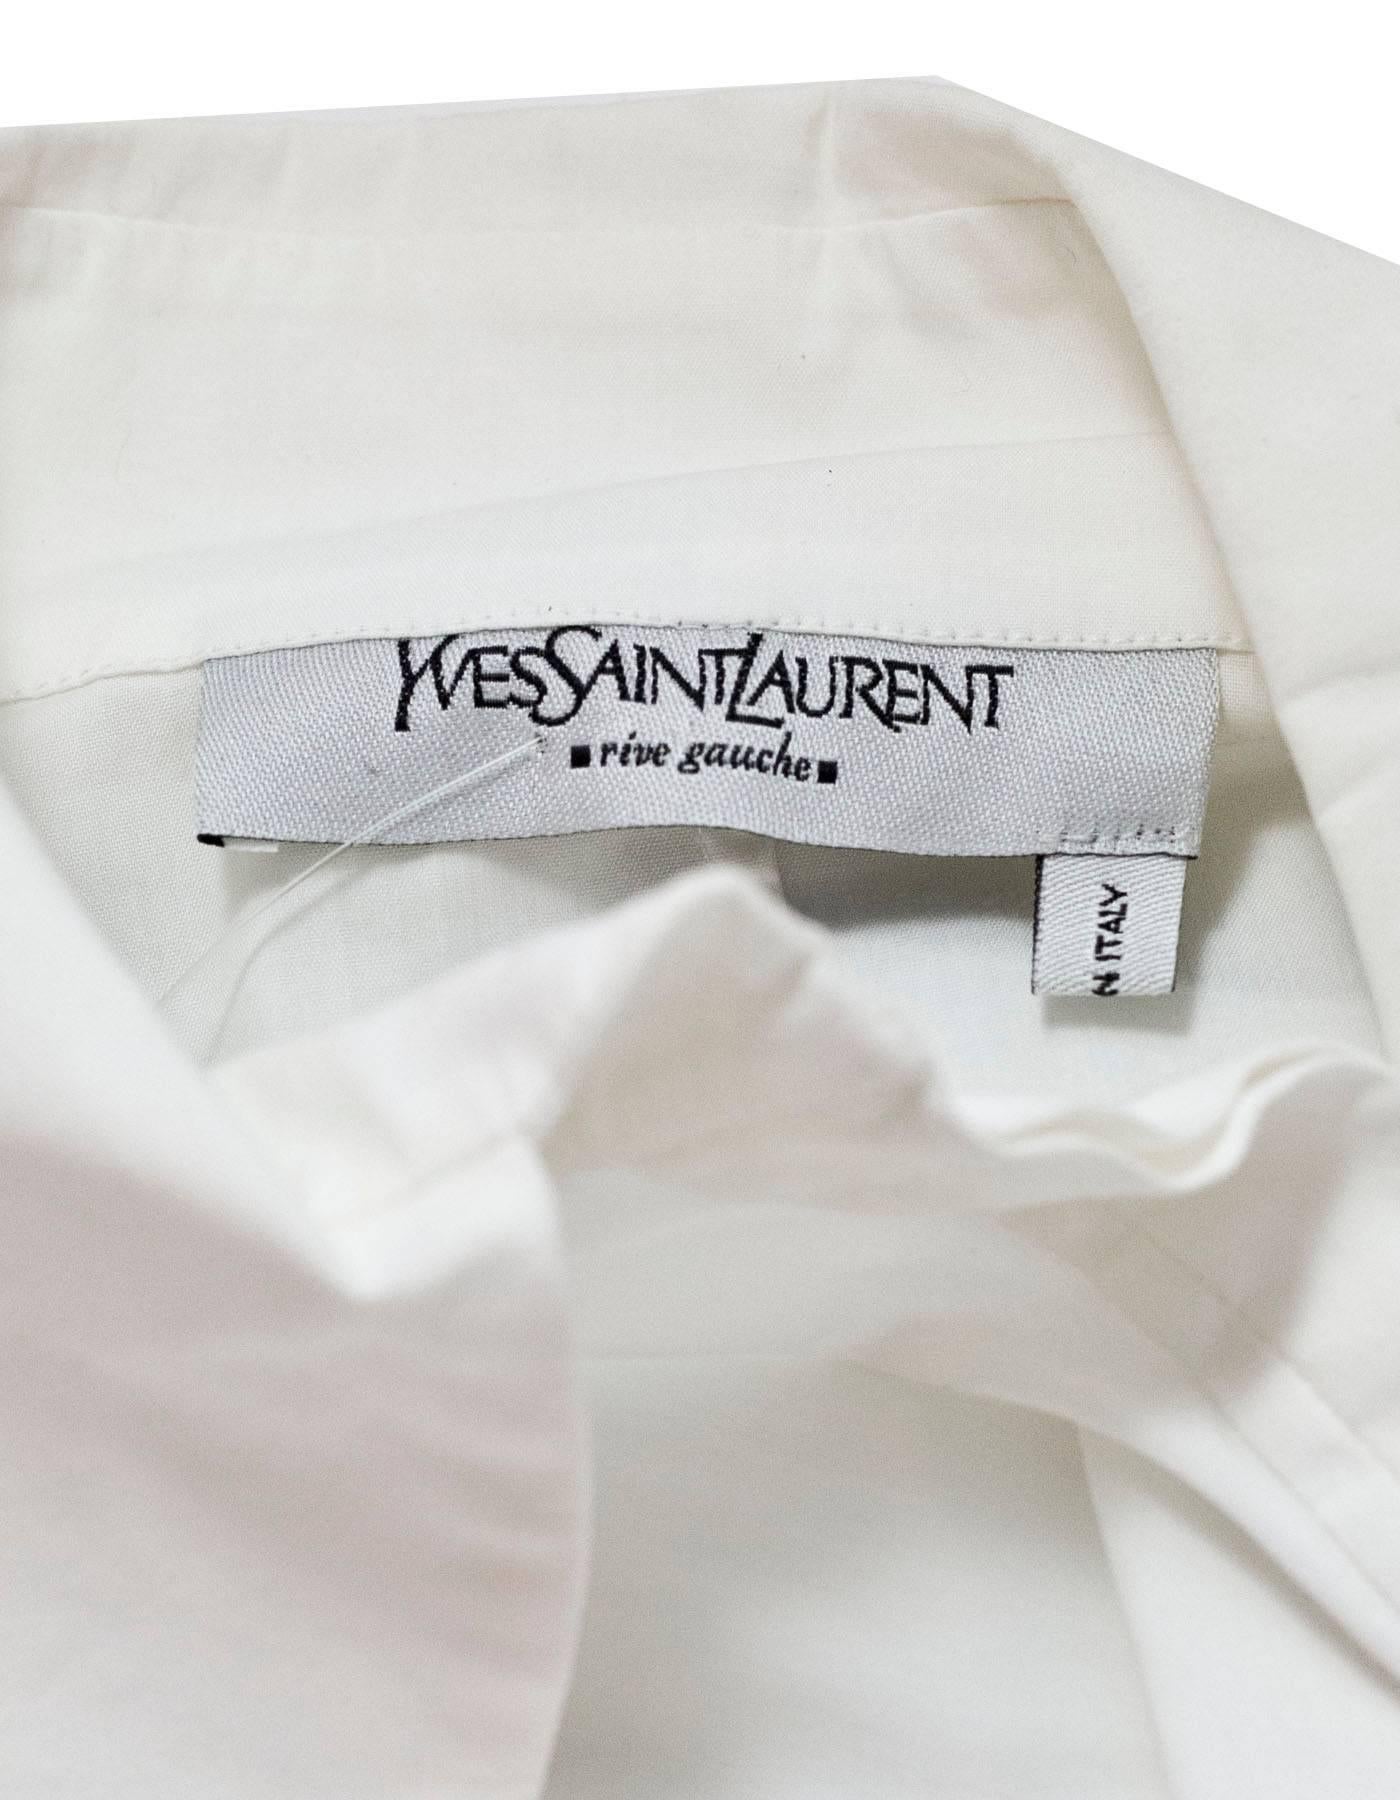 Women's Yves Saint Laurent White Cotton Button Down Top sz FR34